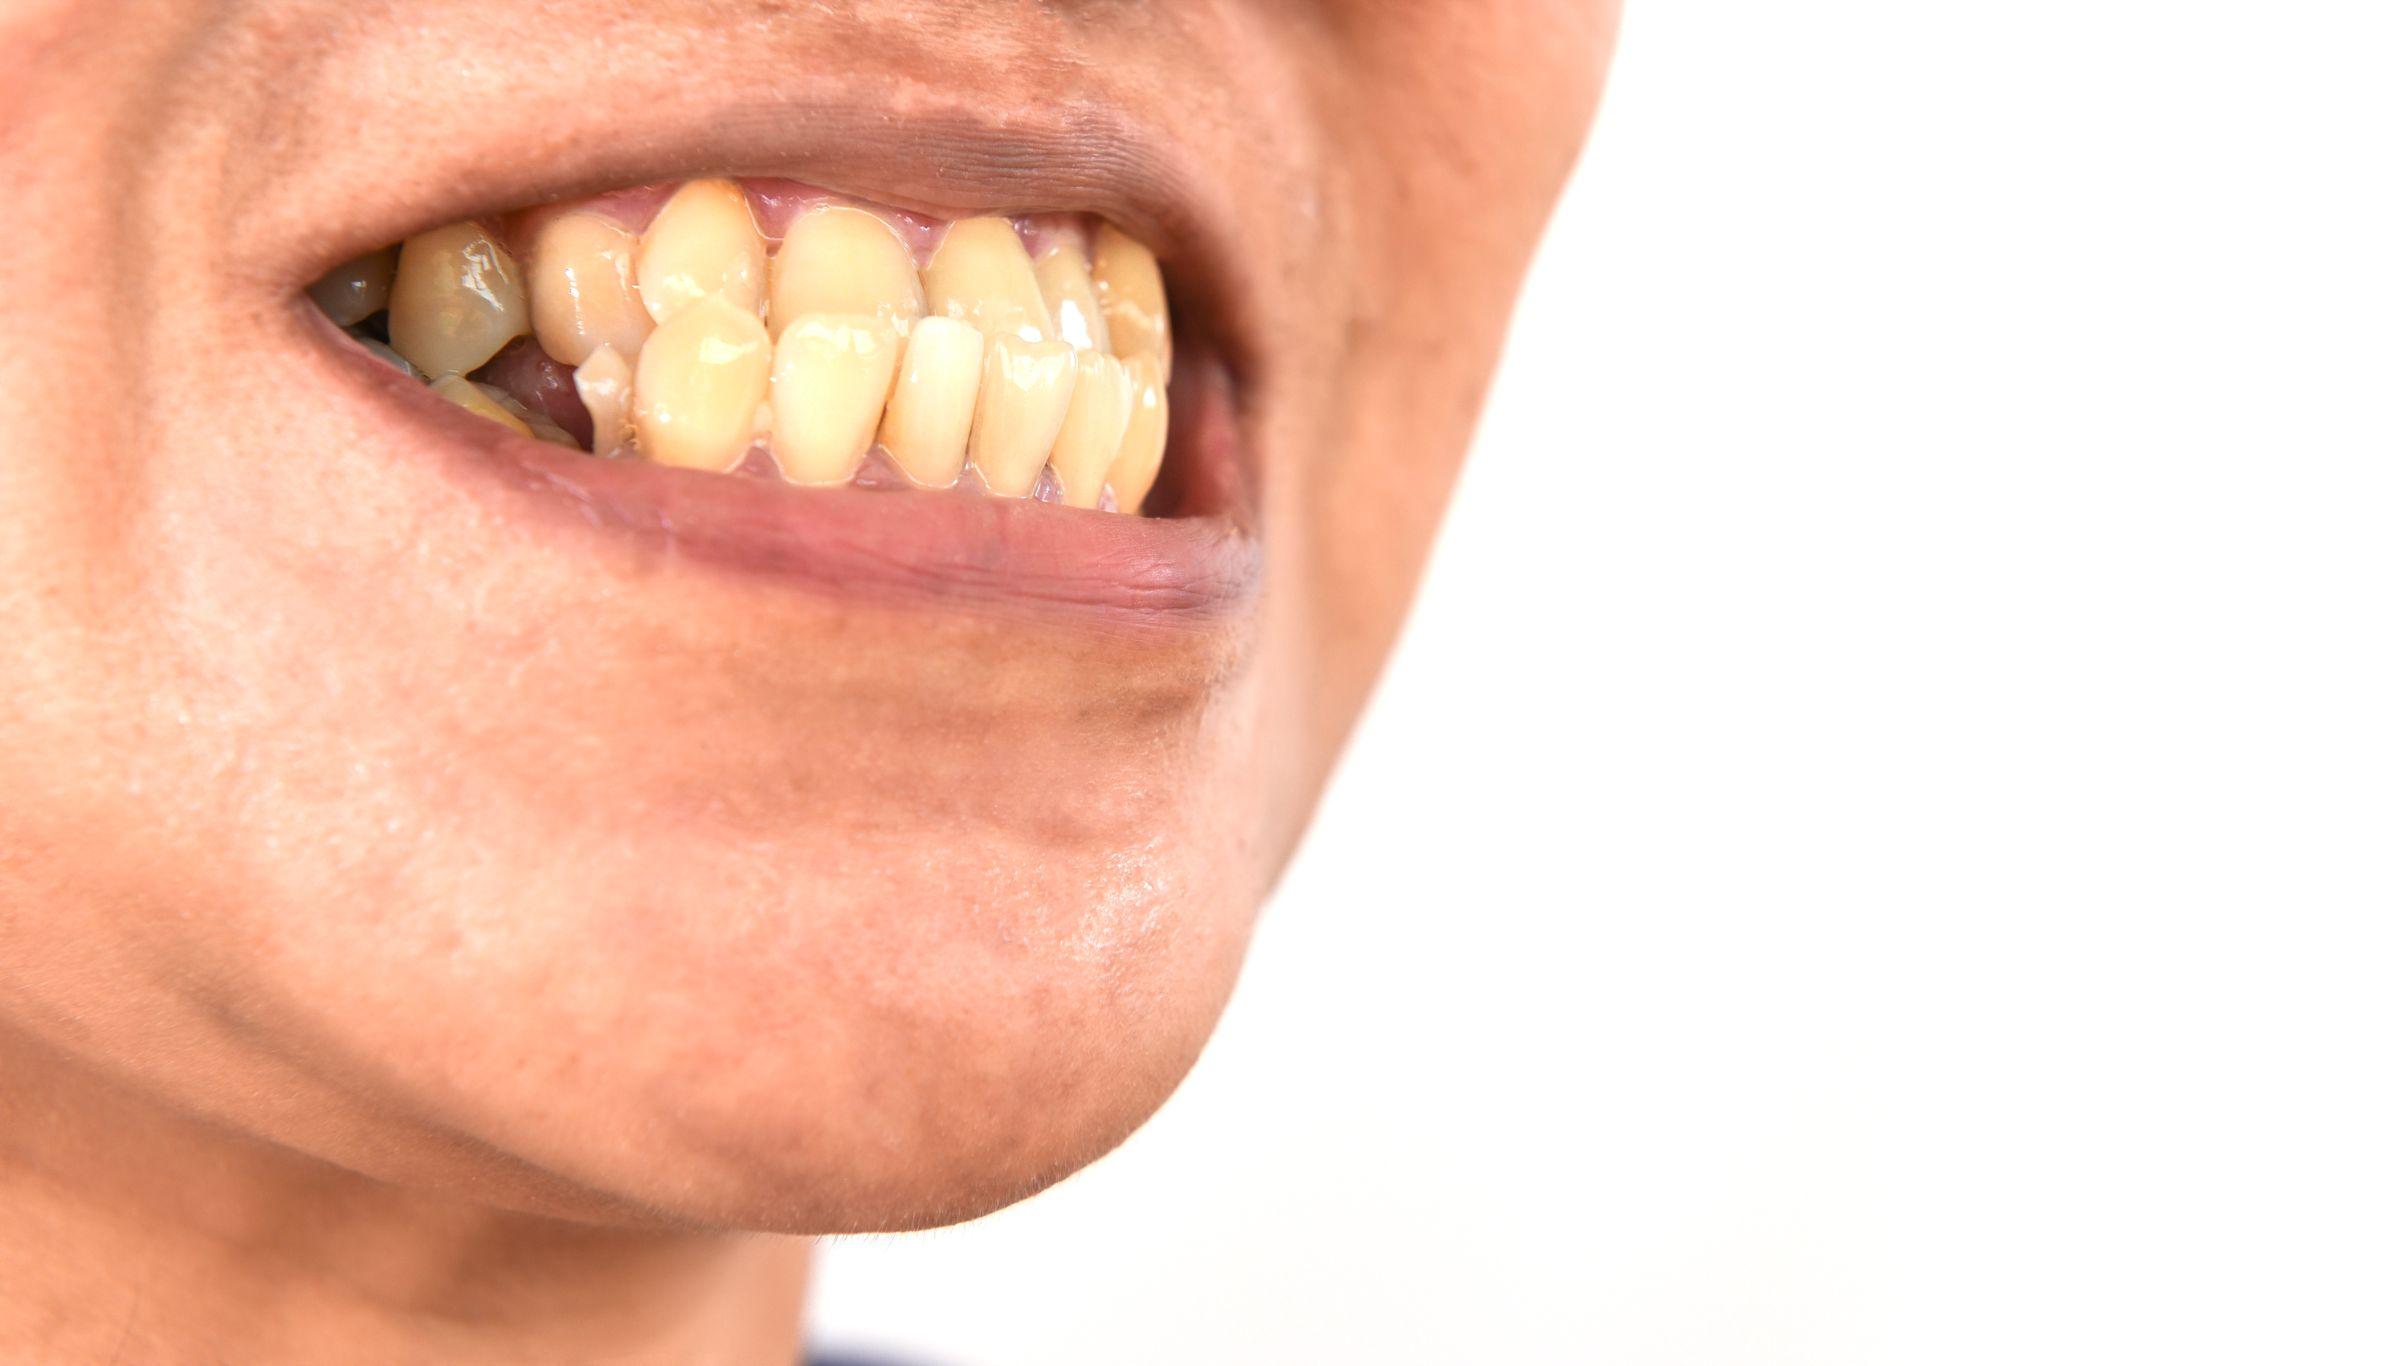 下顎の歯が上顎の歯よりも前に出ている様子